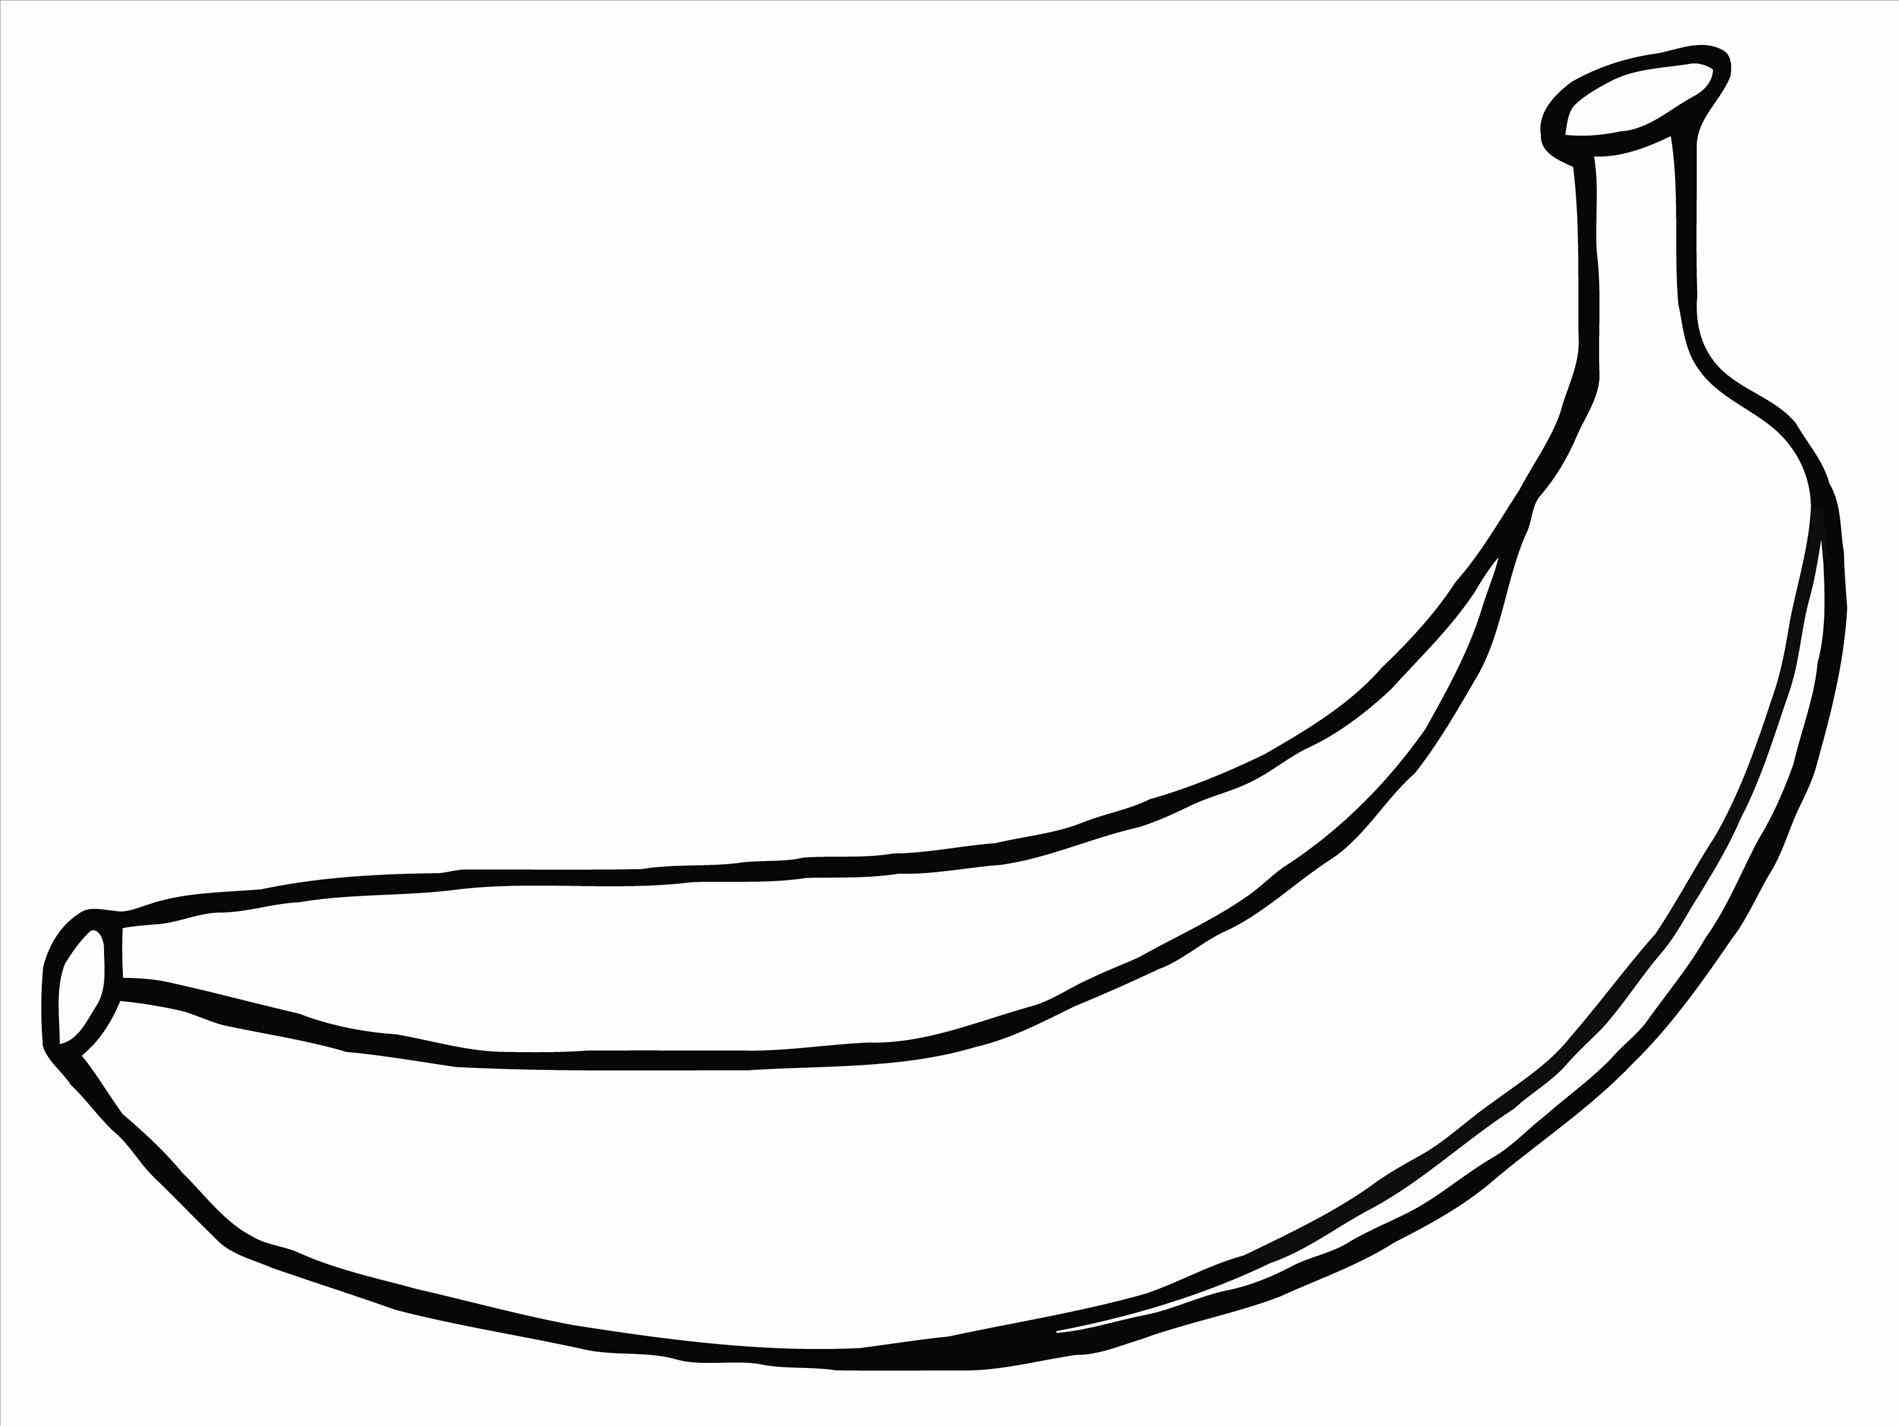 Banana Cartoon Drawing at GetDrawings | Free download